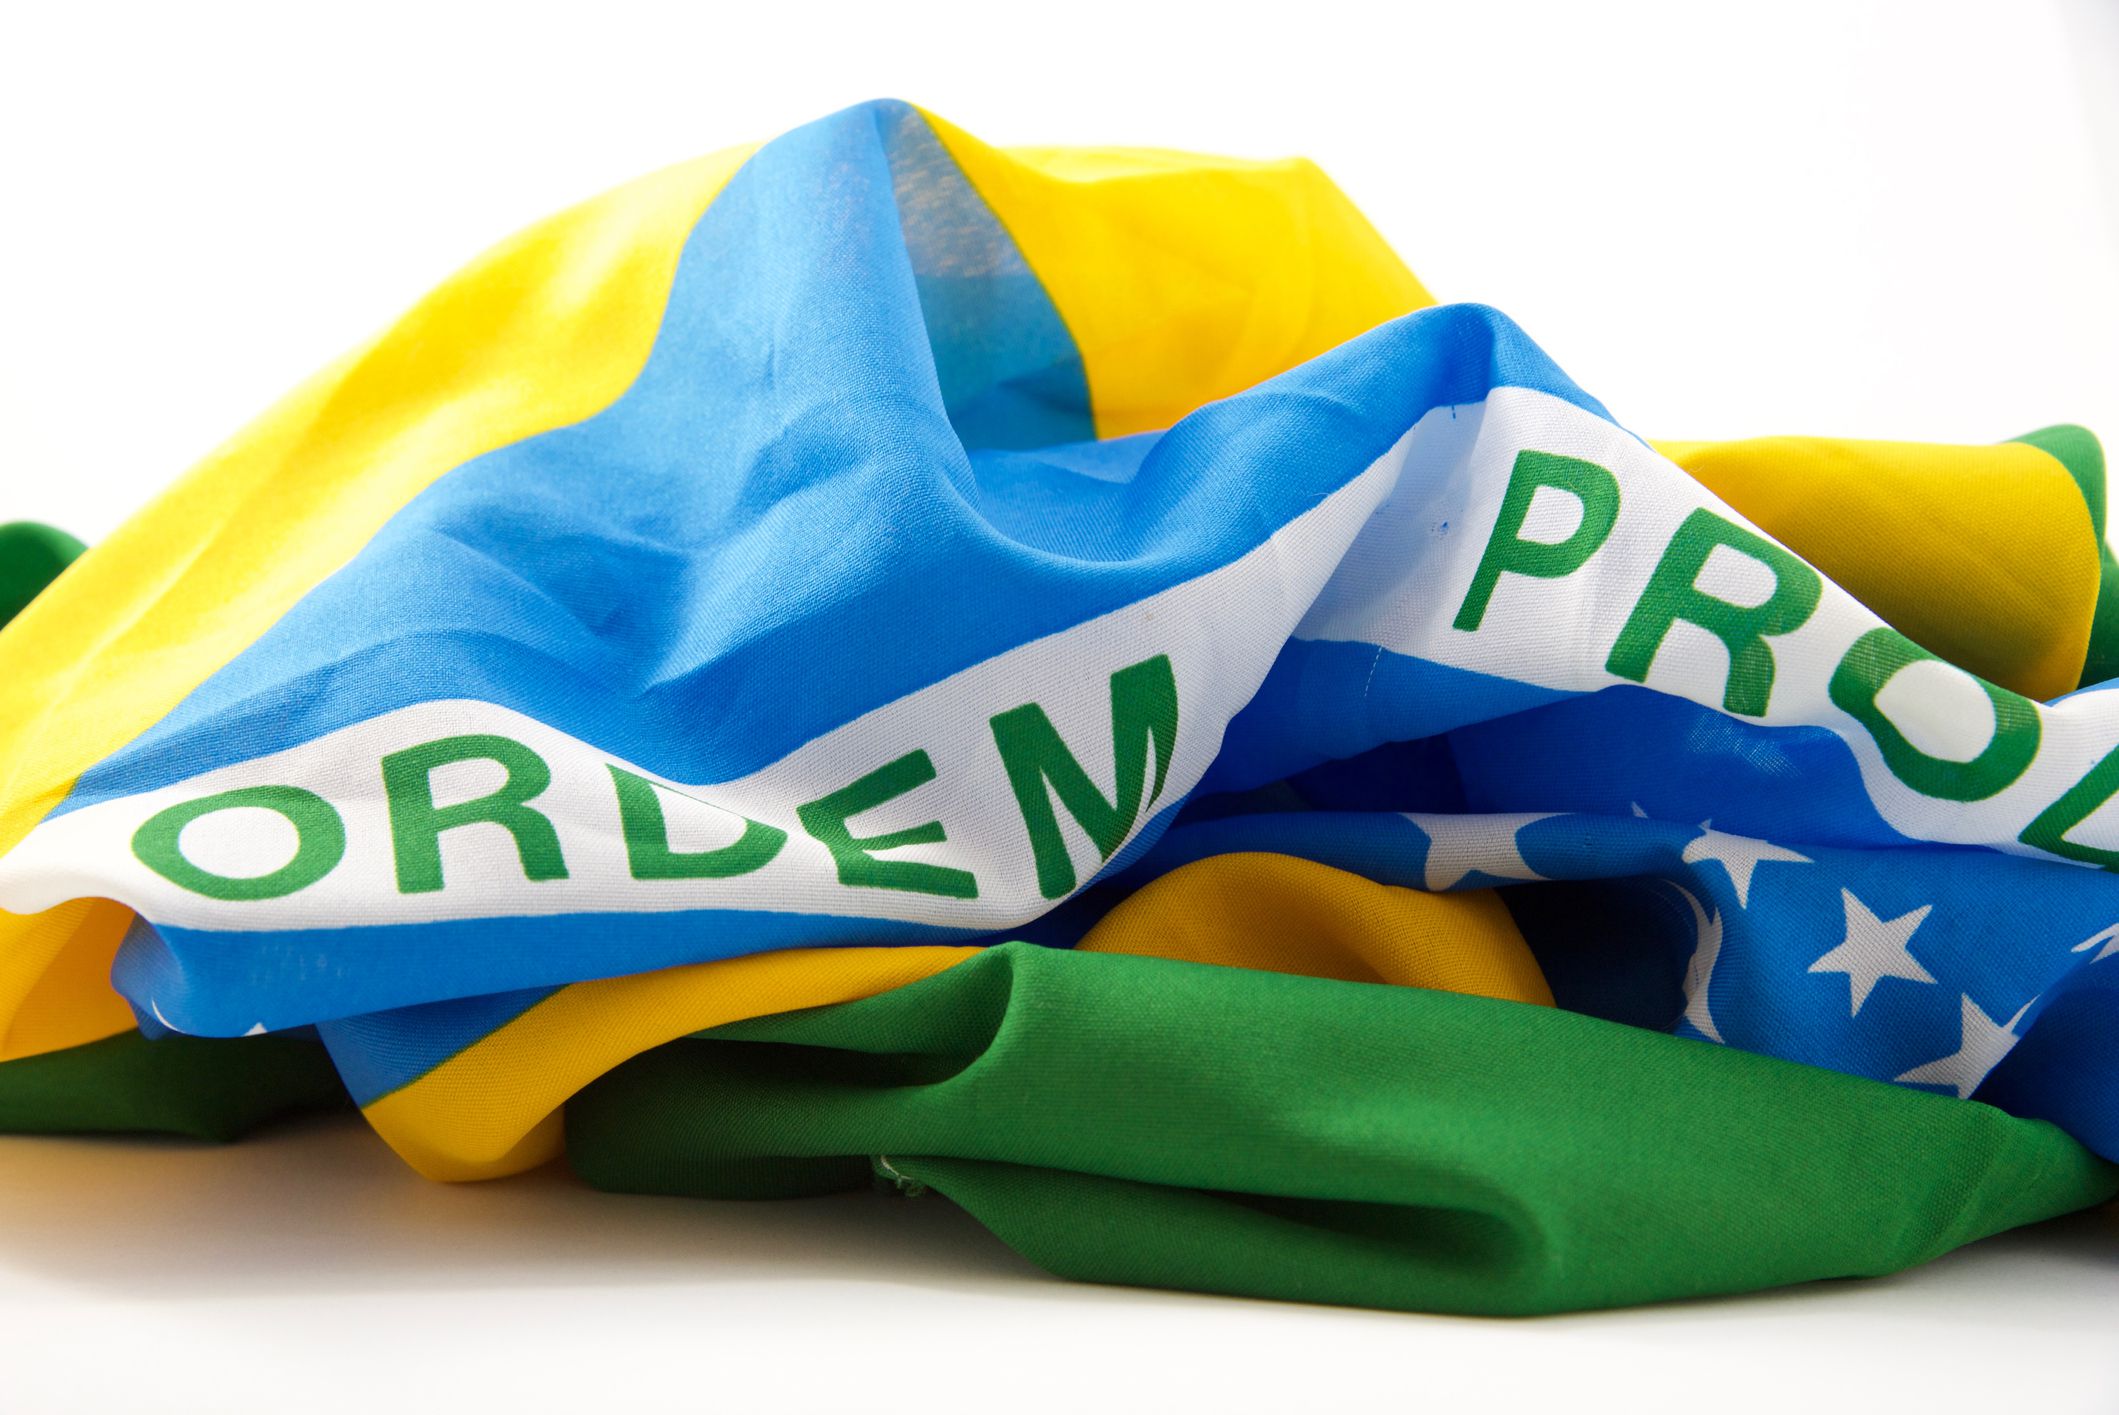 A statisztikákkal foglalkozó Gracenote elemzése szerint Brazília a legesélyesebb a katari világbajnokság megnyerésére.